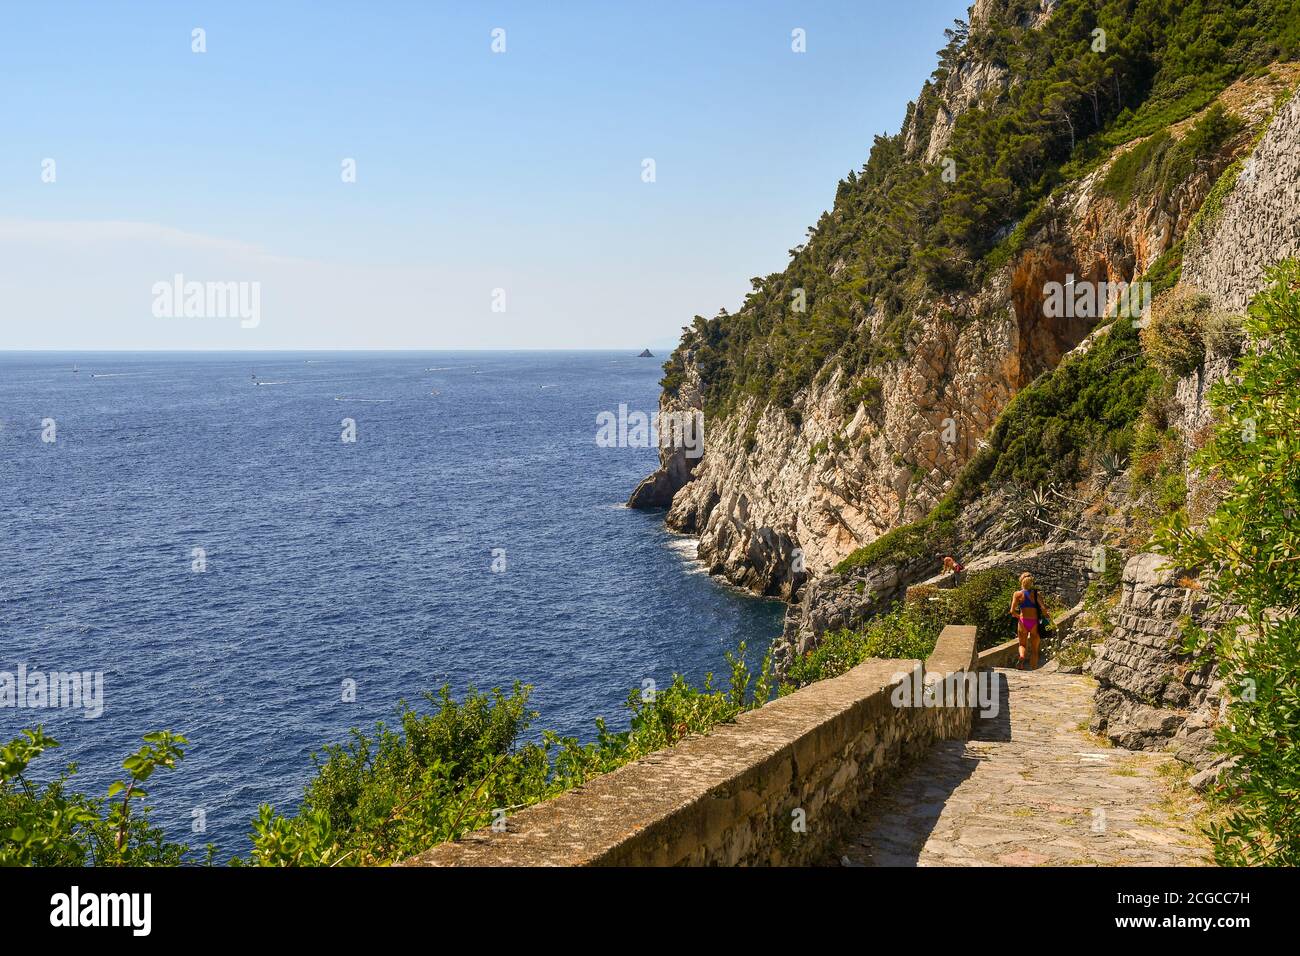 Vista panoramica dalla scogliera che domina il mare ligure con due turisti sul sentiero in pietra in estate, Porto Venere, la Spezia, Liguria, Italia Foto Stock